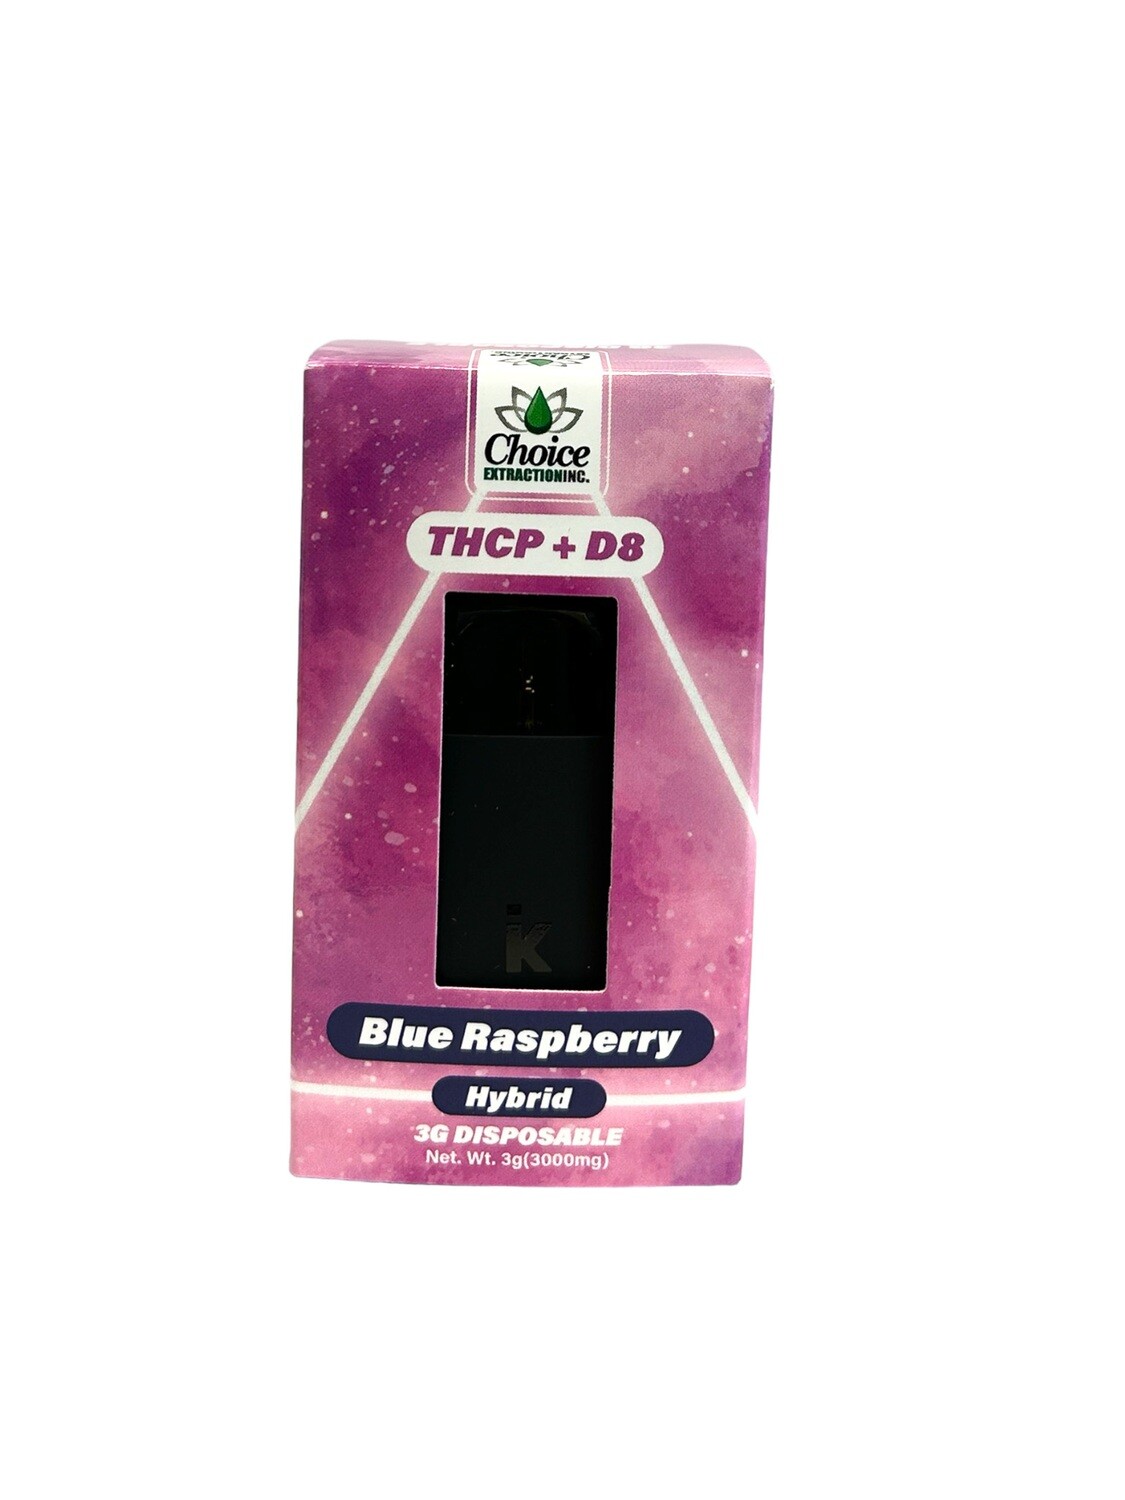 THCP + D8 Disposable - Blue Raspberry 3mL - Hybrid